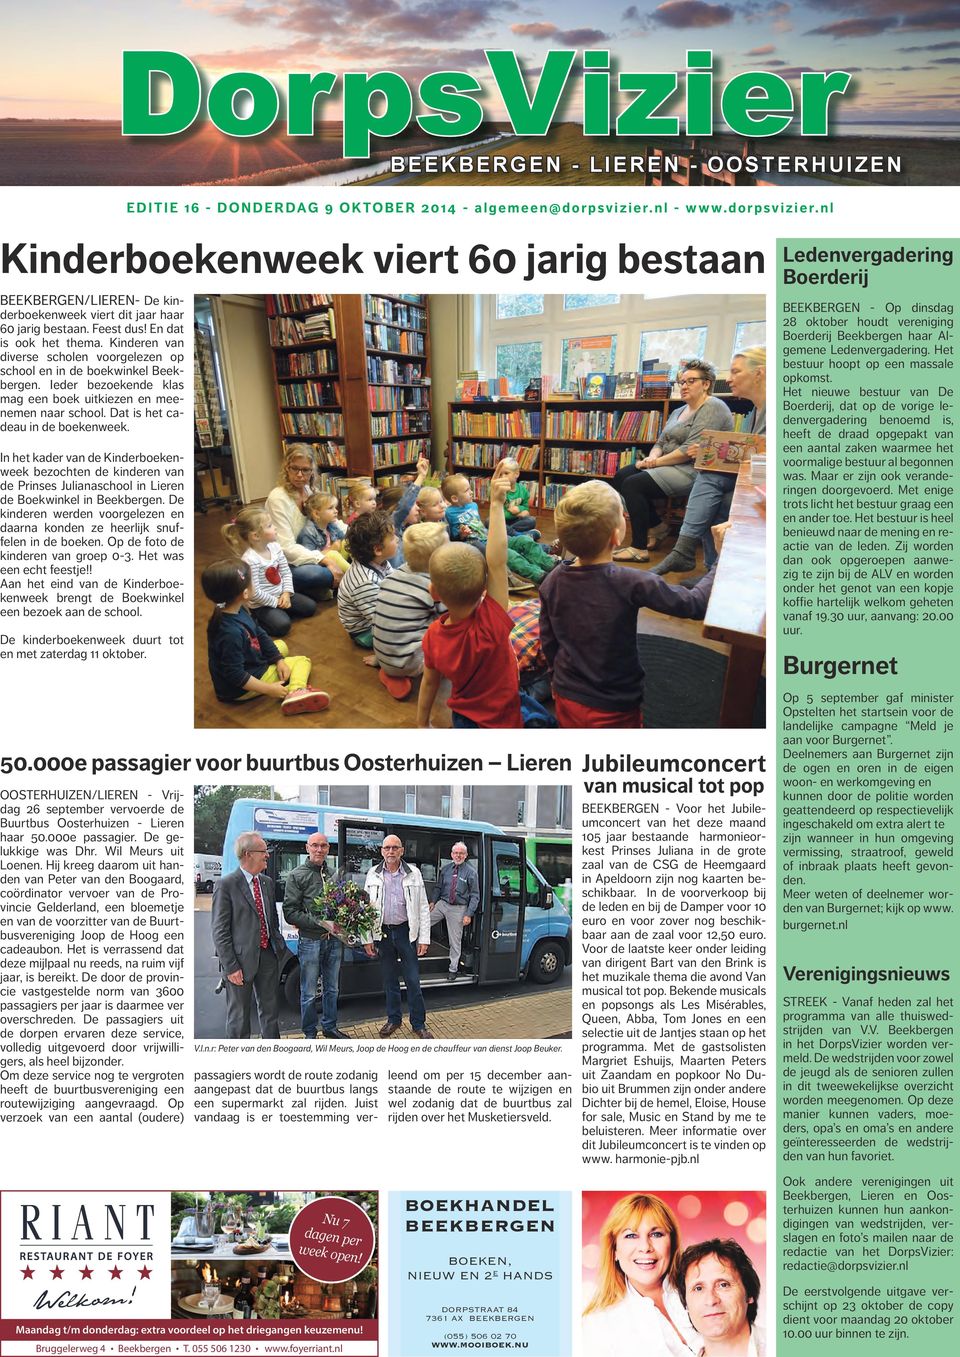 Kinderen van diverse scholen voorgelezen op school en in de boekwinkel Beekbergen. Ieder bezoekende klas mag een boek uitkiezen en meenemen naar school. Dat is het cadeau in de boekenweek.